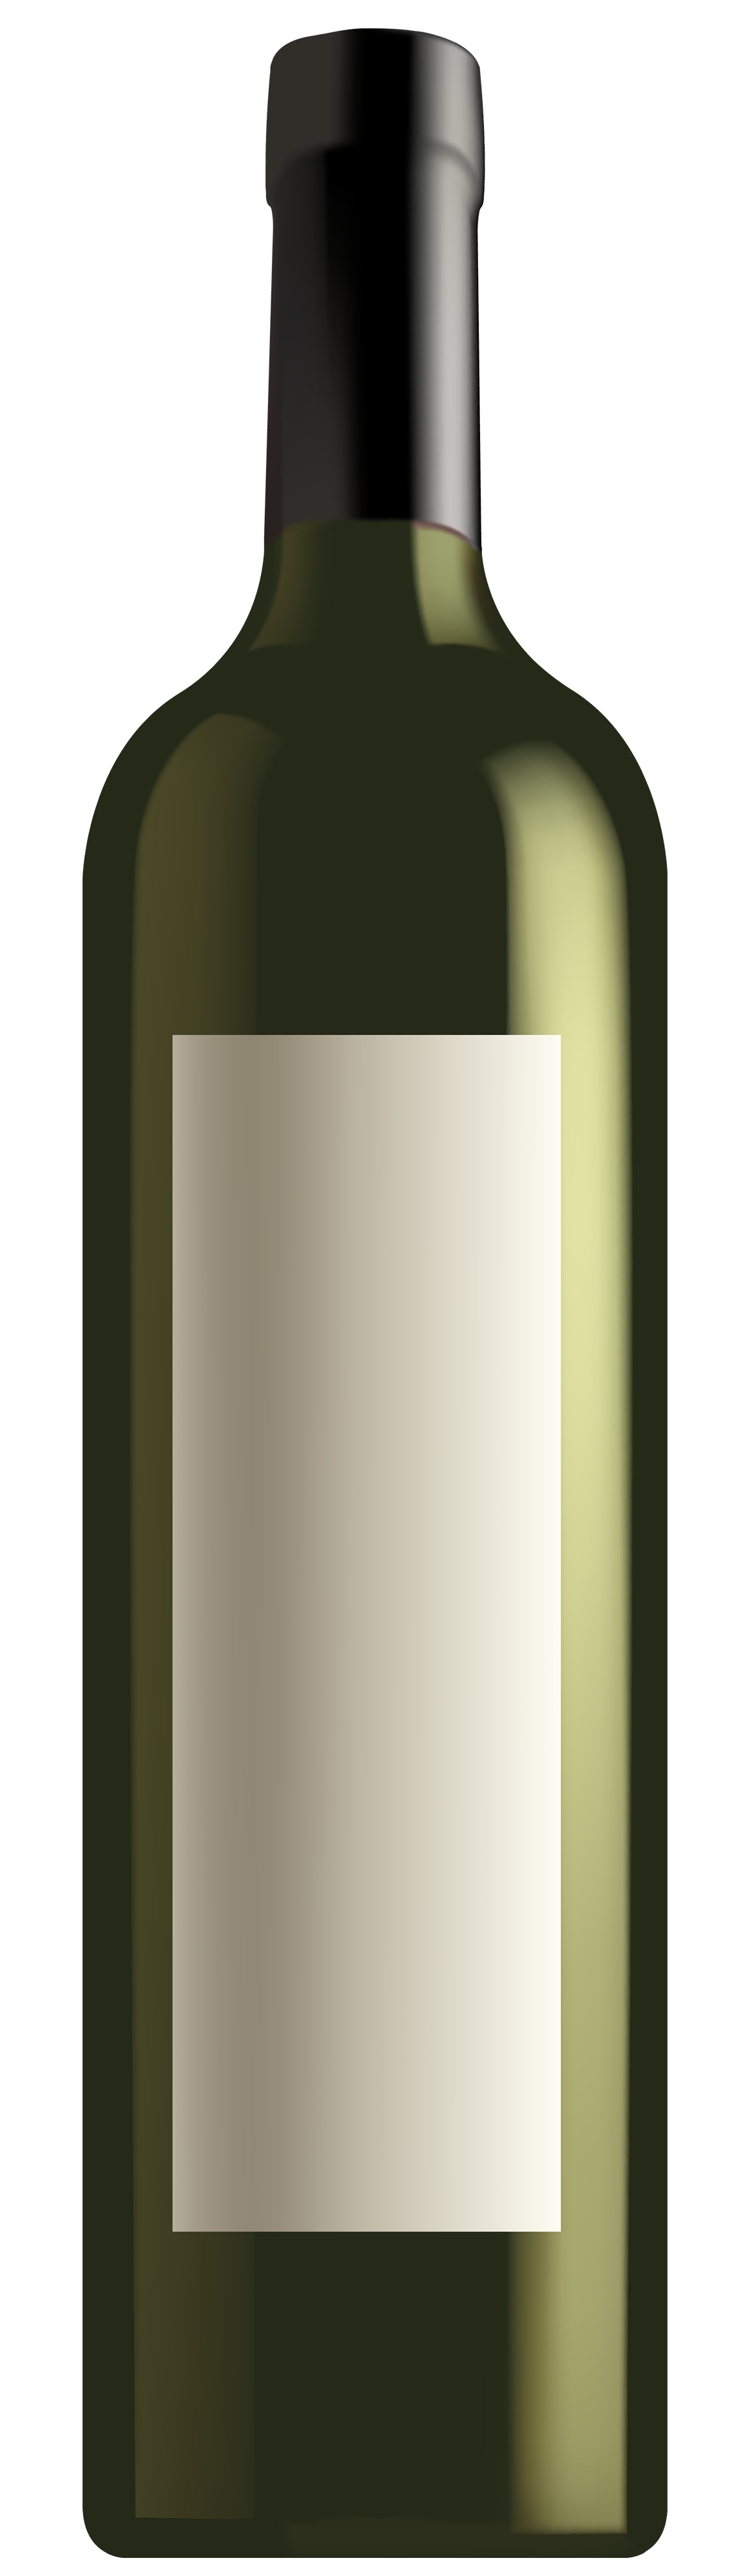 Wine bottle wine clip art image